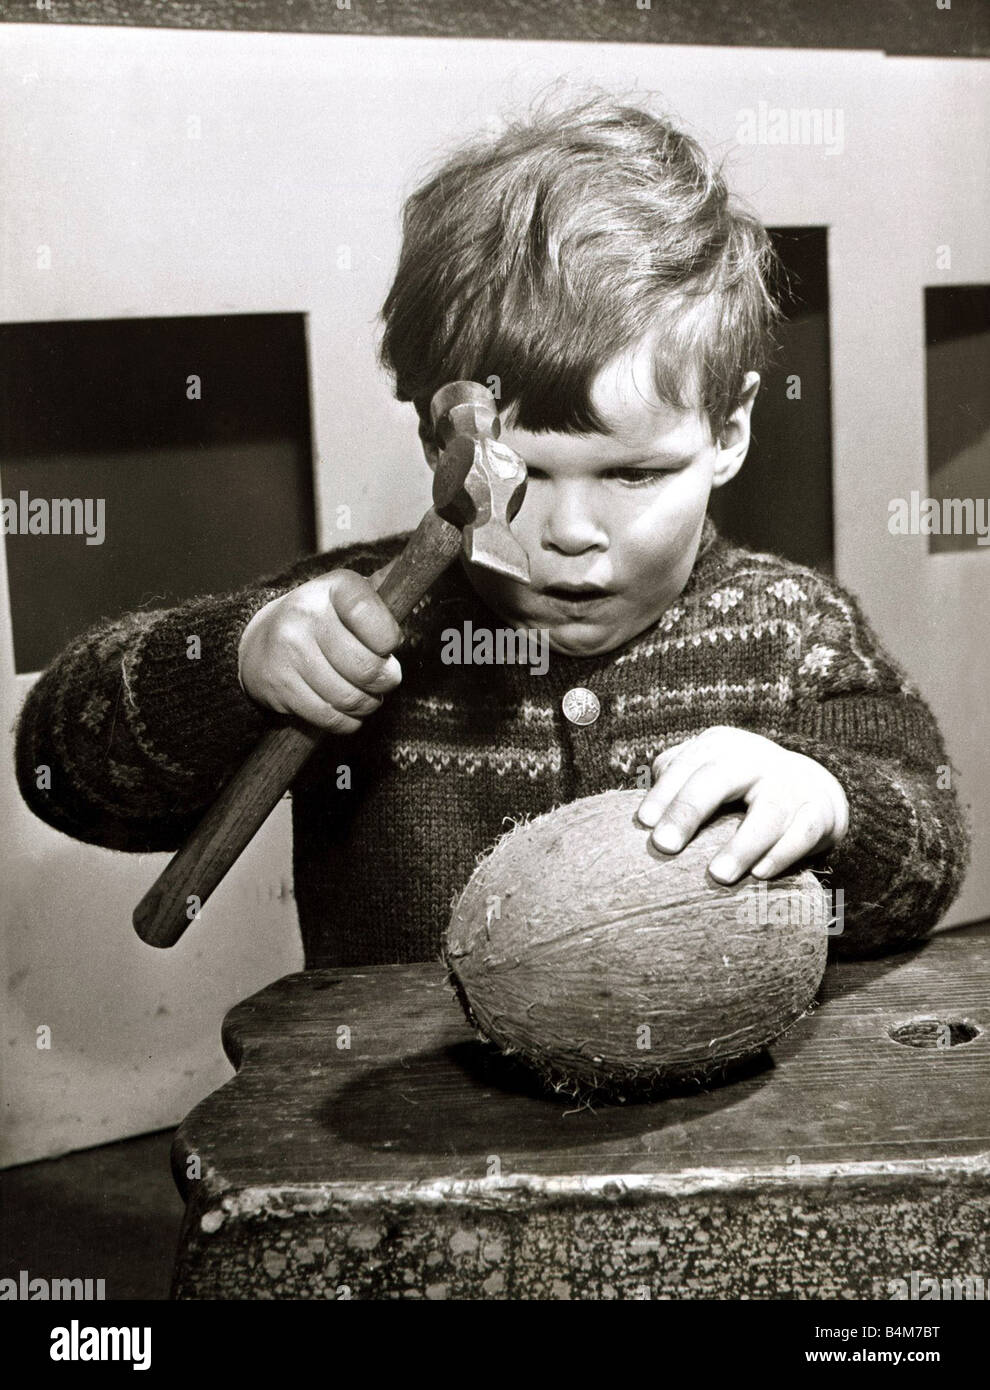 Ein kleiner Junge versucht zu knacken öffnen eine Kokosnuss mit einem Hammer  März 1965 Stockfotografie - Alamy